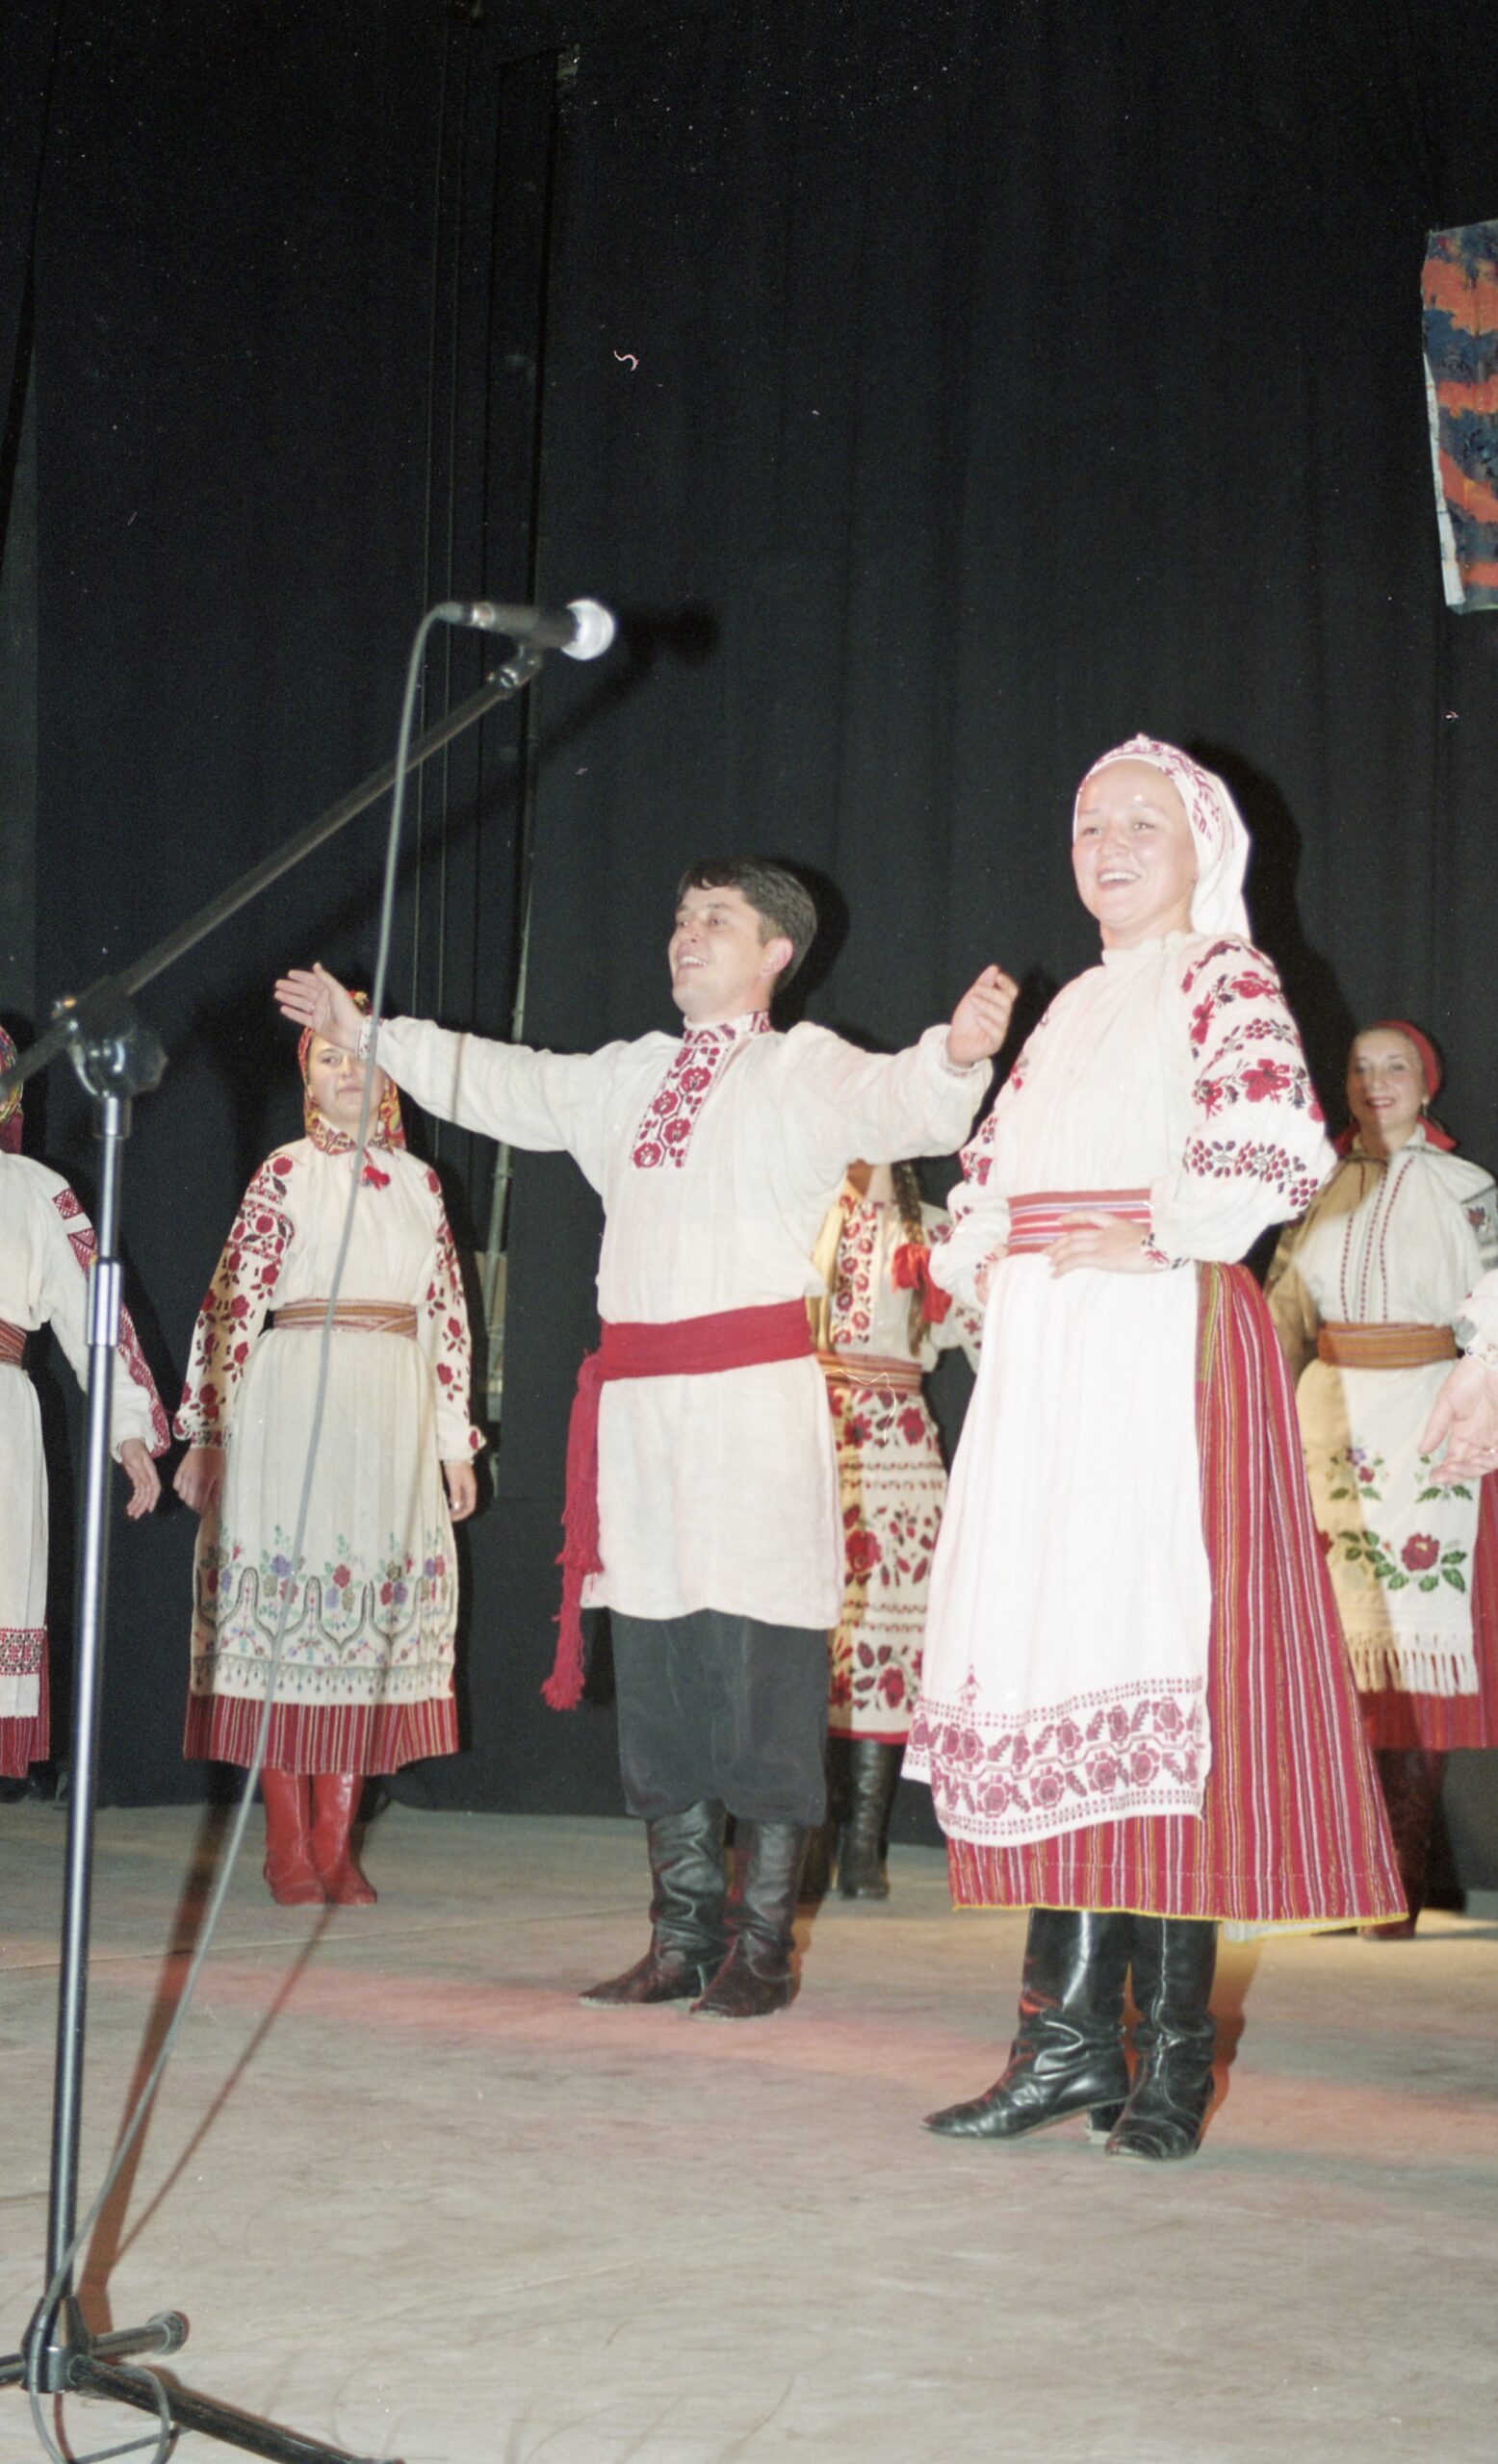 Фестиваль “Підляська осінь” 2001 – концерт у Бiлостоцi